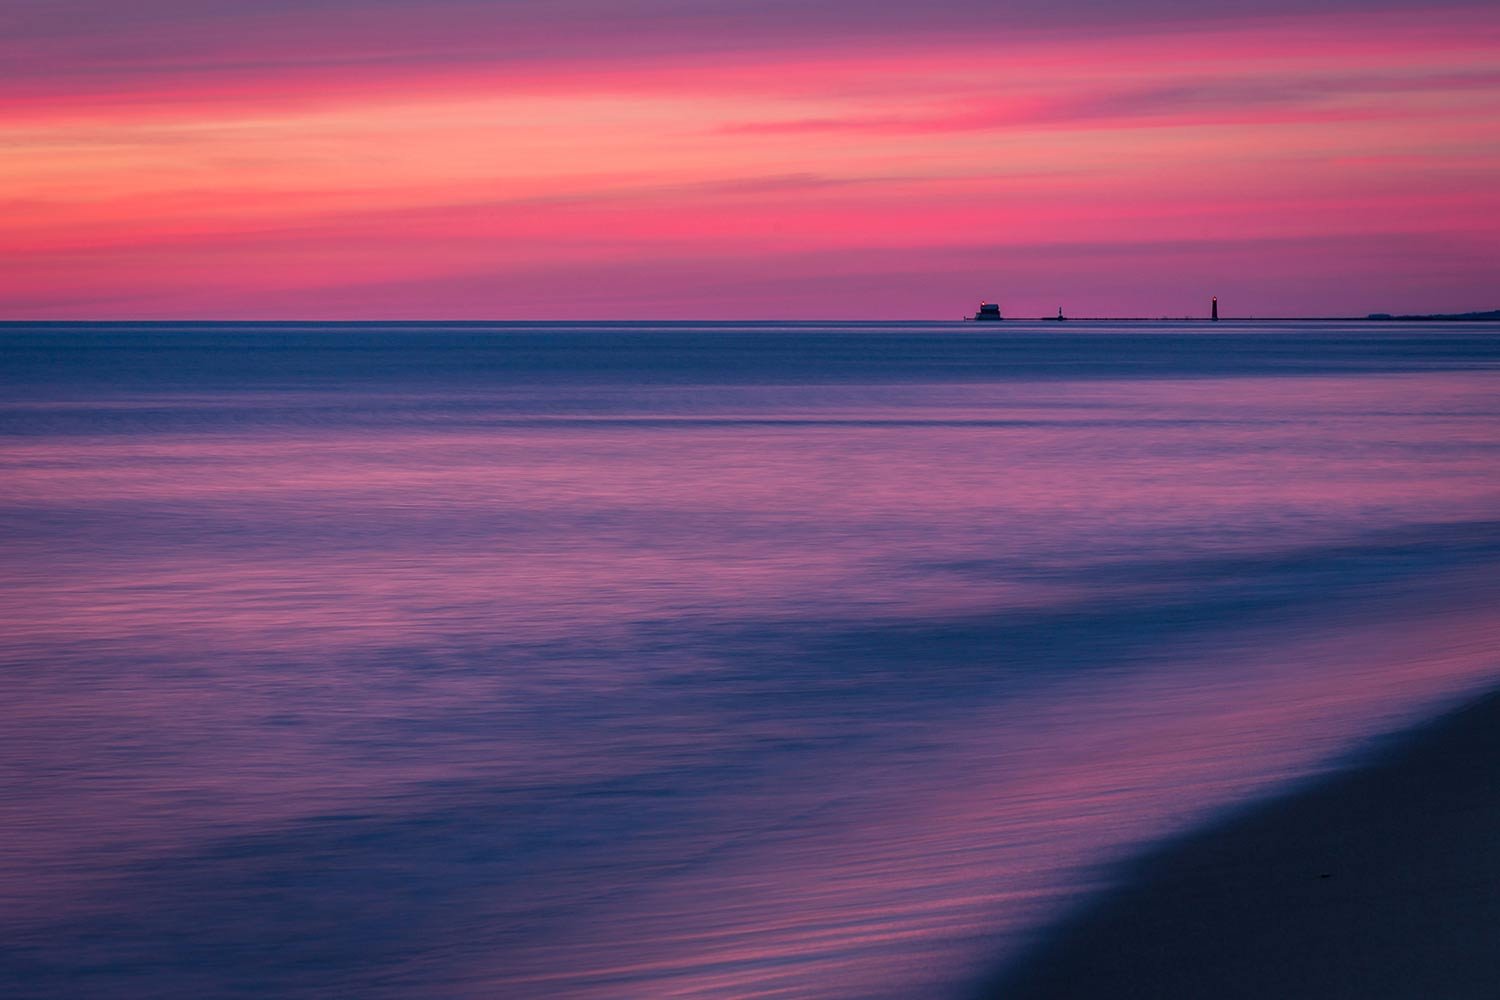  Pastels at dusk, Lake Michigan 